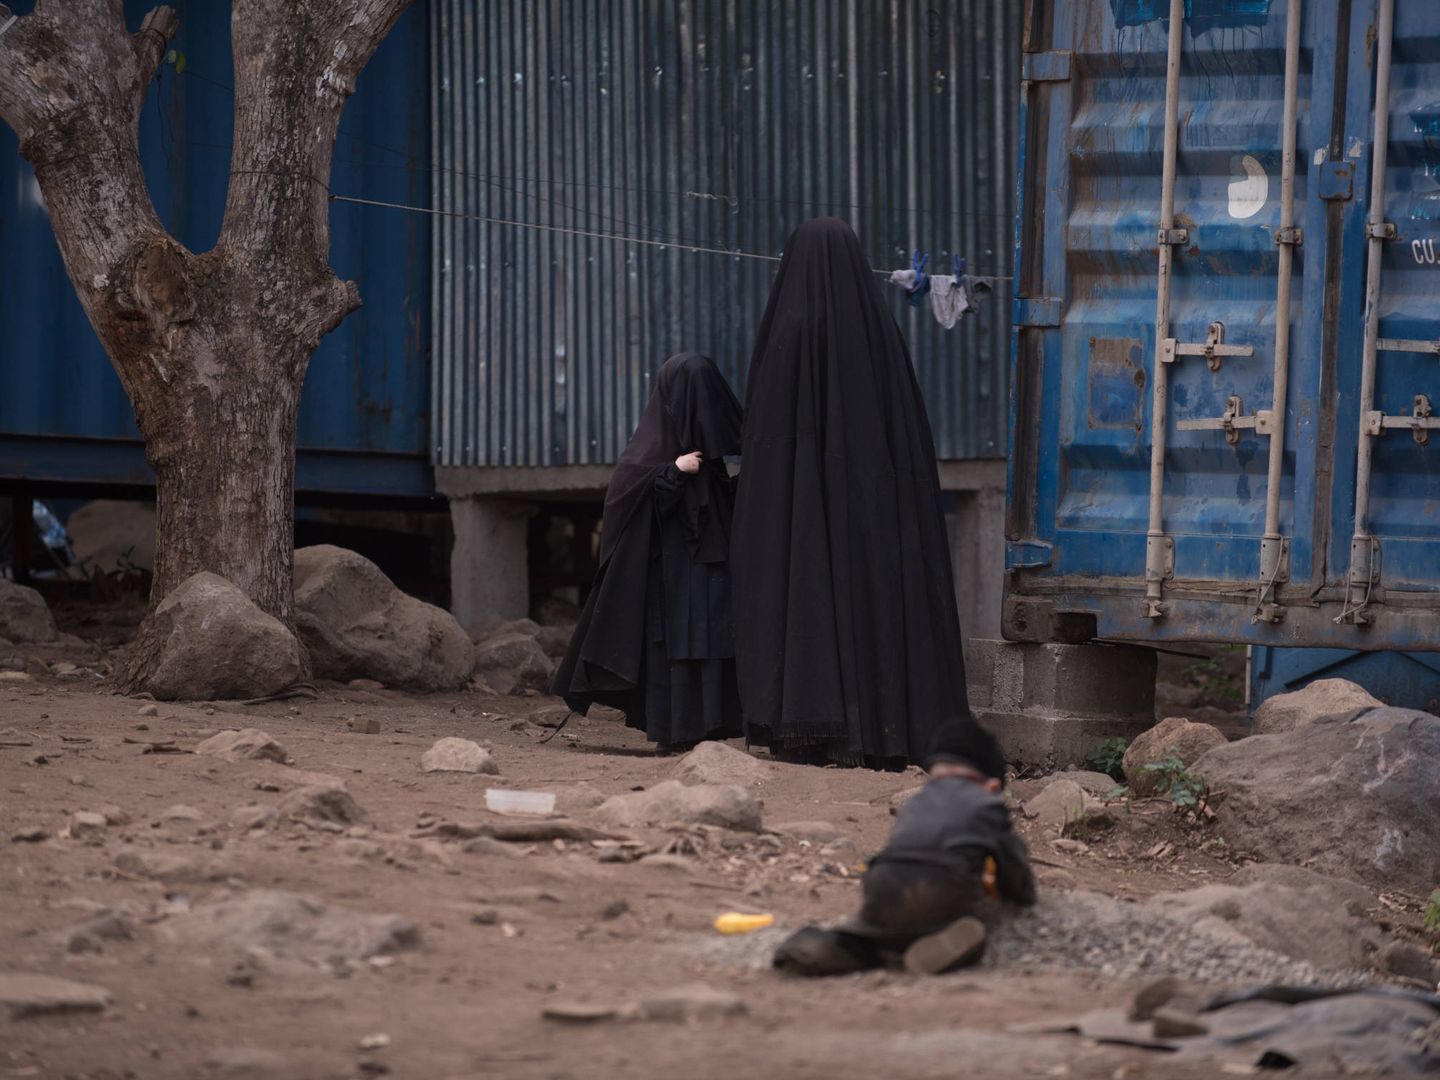 Las mujeres de Lev Tahor ocultan su cuerpo con una prenda que solo muestra su rostro. (S. Billy)